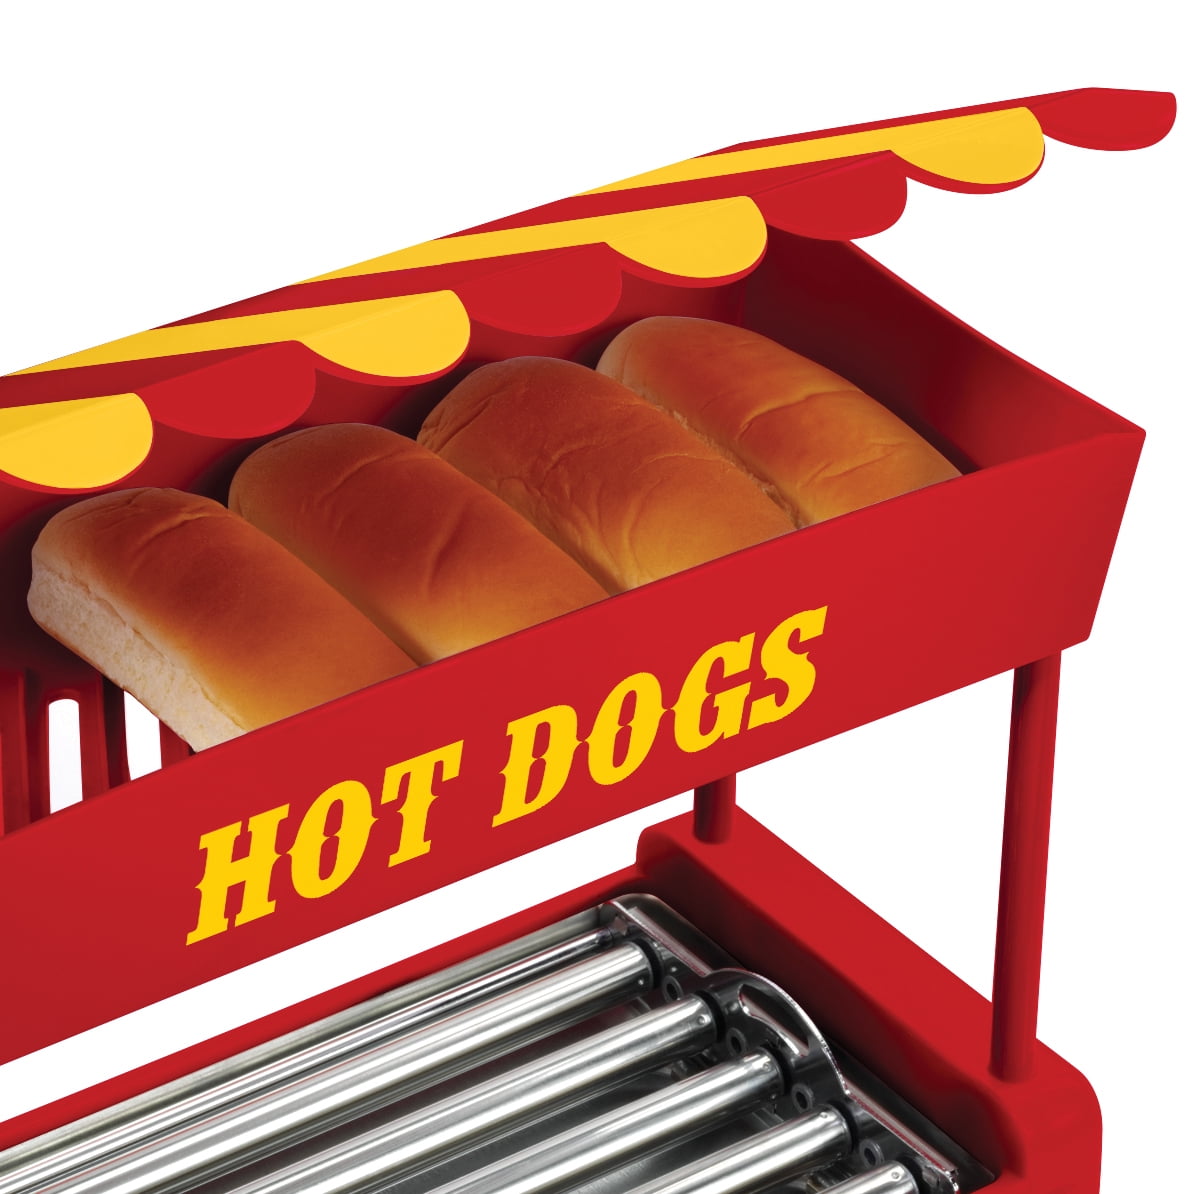 Nostalgia Hot Dog Roller and Bun Warmer, 8-Hot Dog and 6-Bun